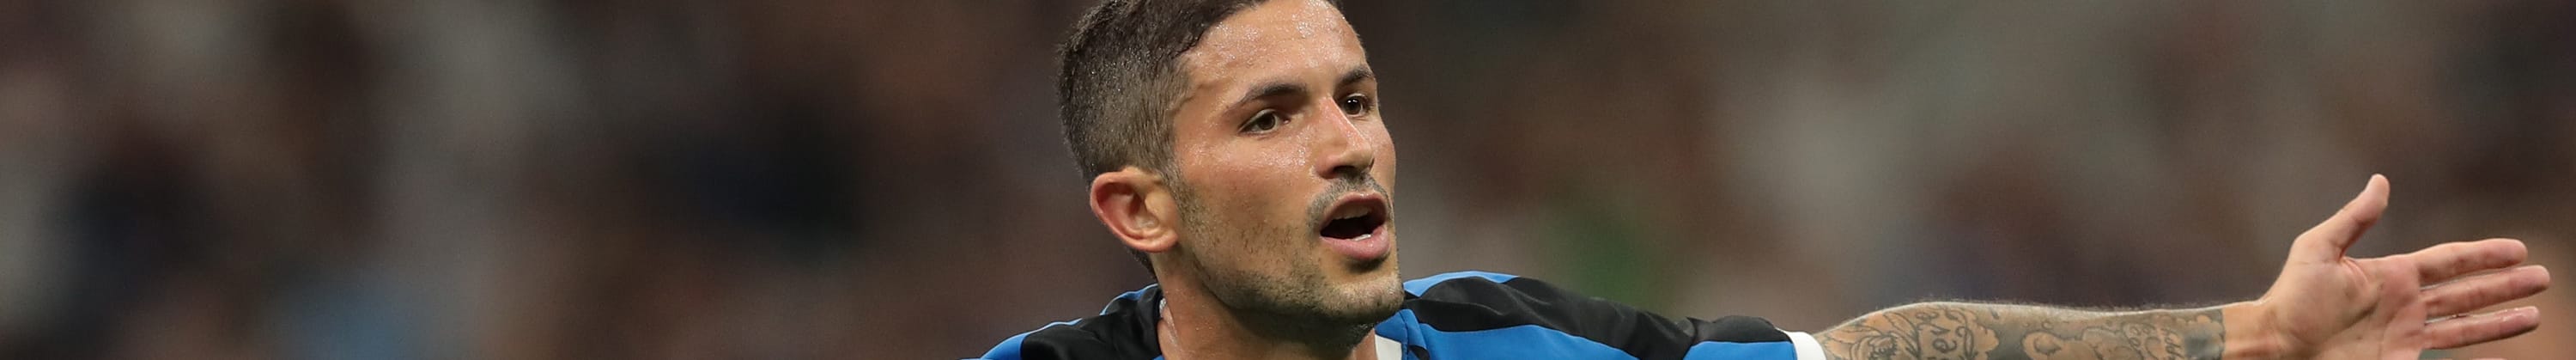 Inter-Udinese: nerazzurri per rimanere in testa, friulani per l'impresa